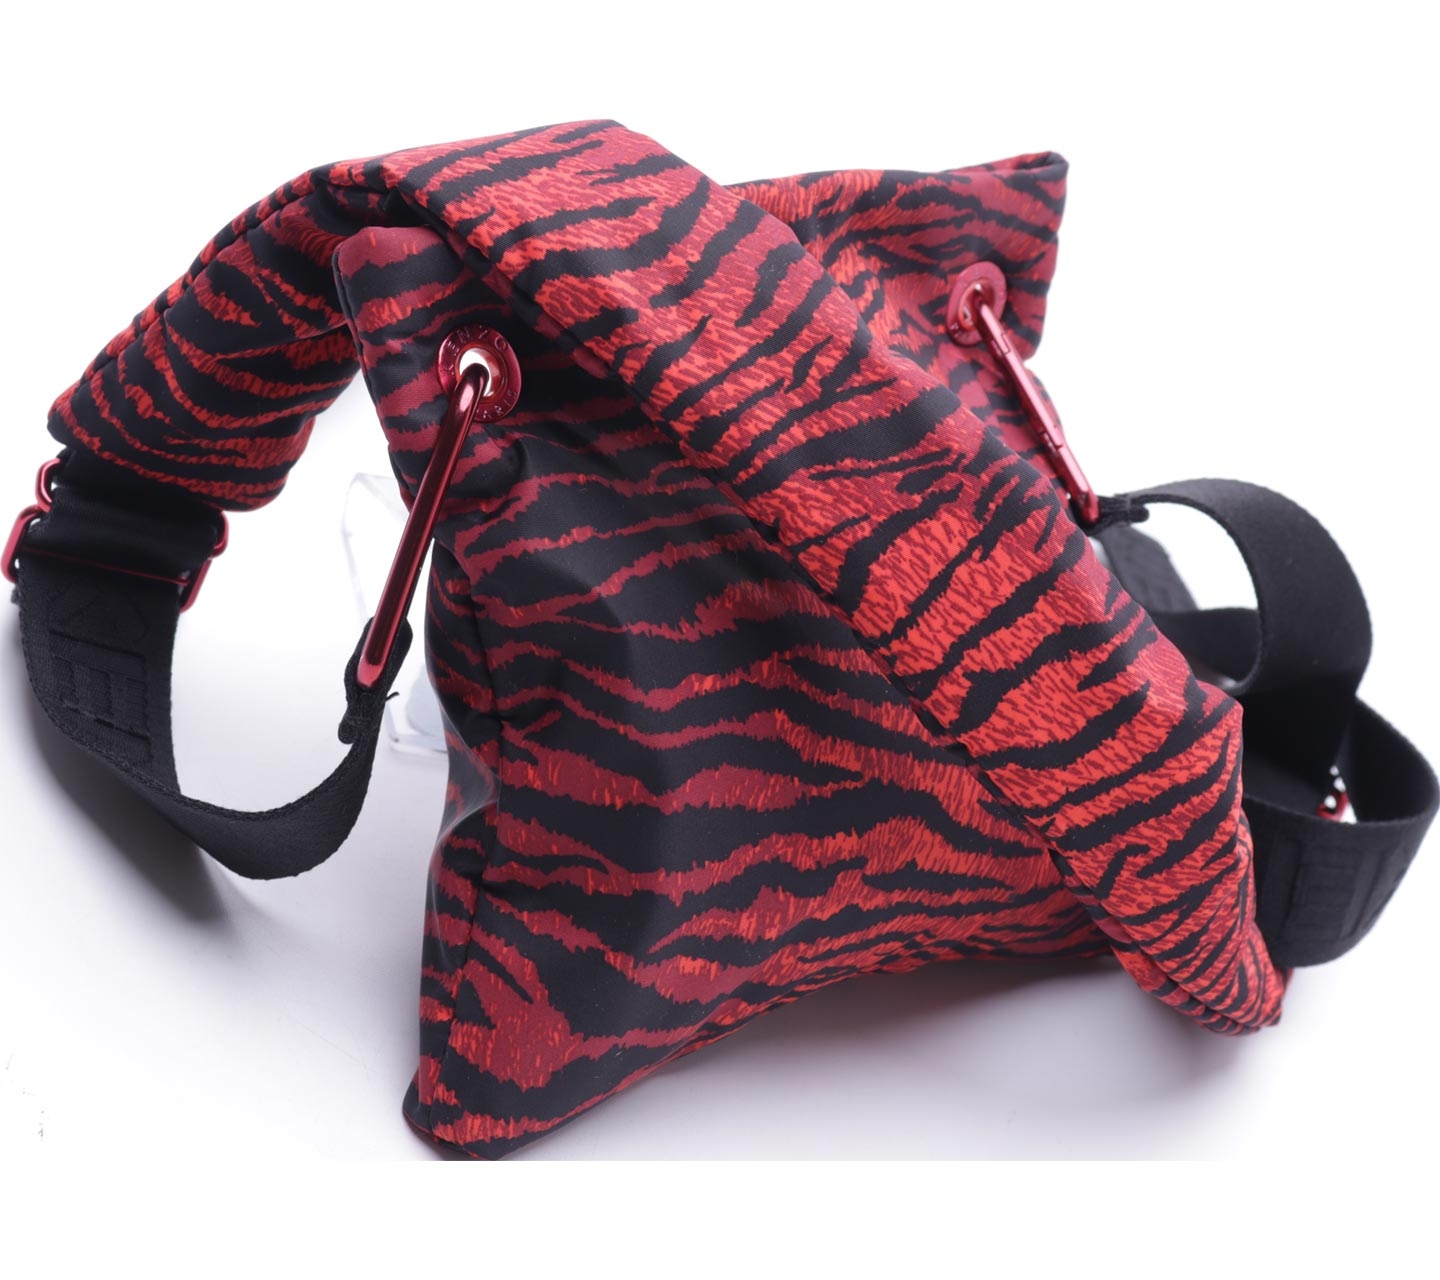 Kenzo X H&M Red & Black Tiger Skin Printed Sling Bag